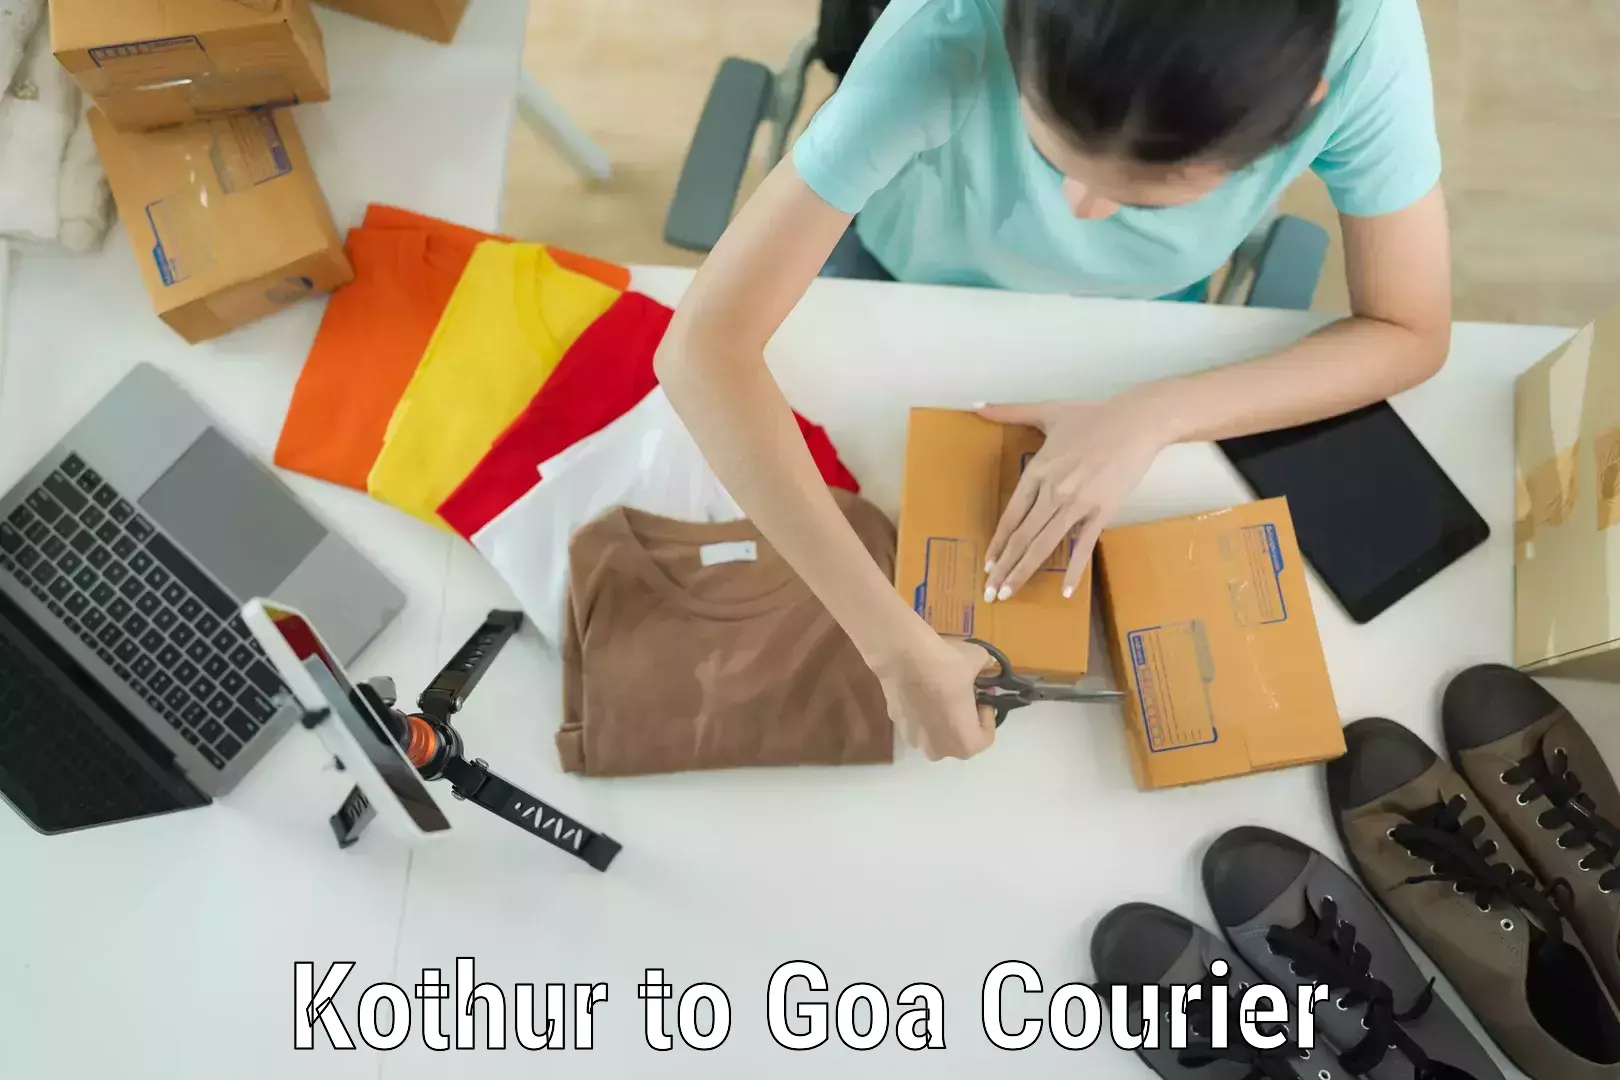 Luggage transfer service Kothur to Goa